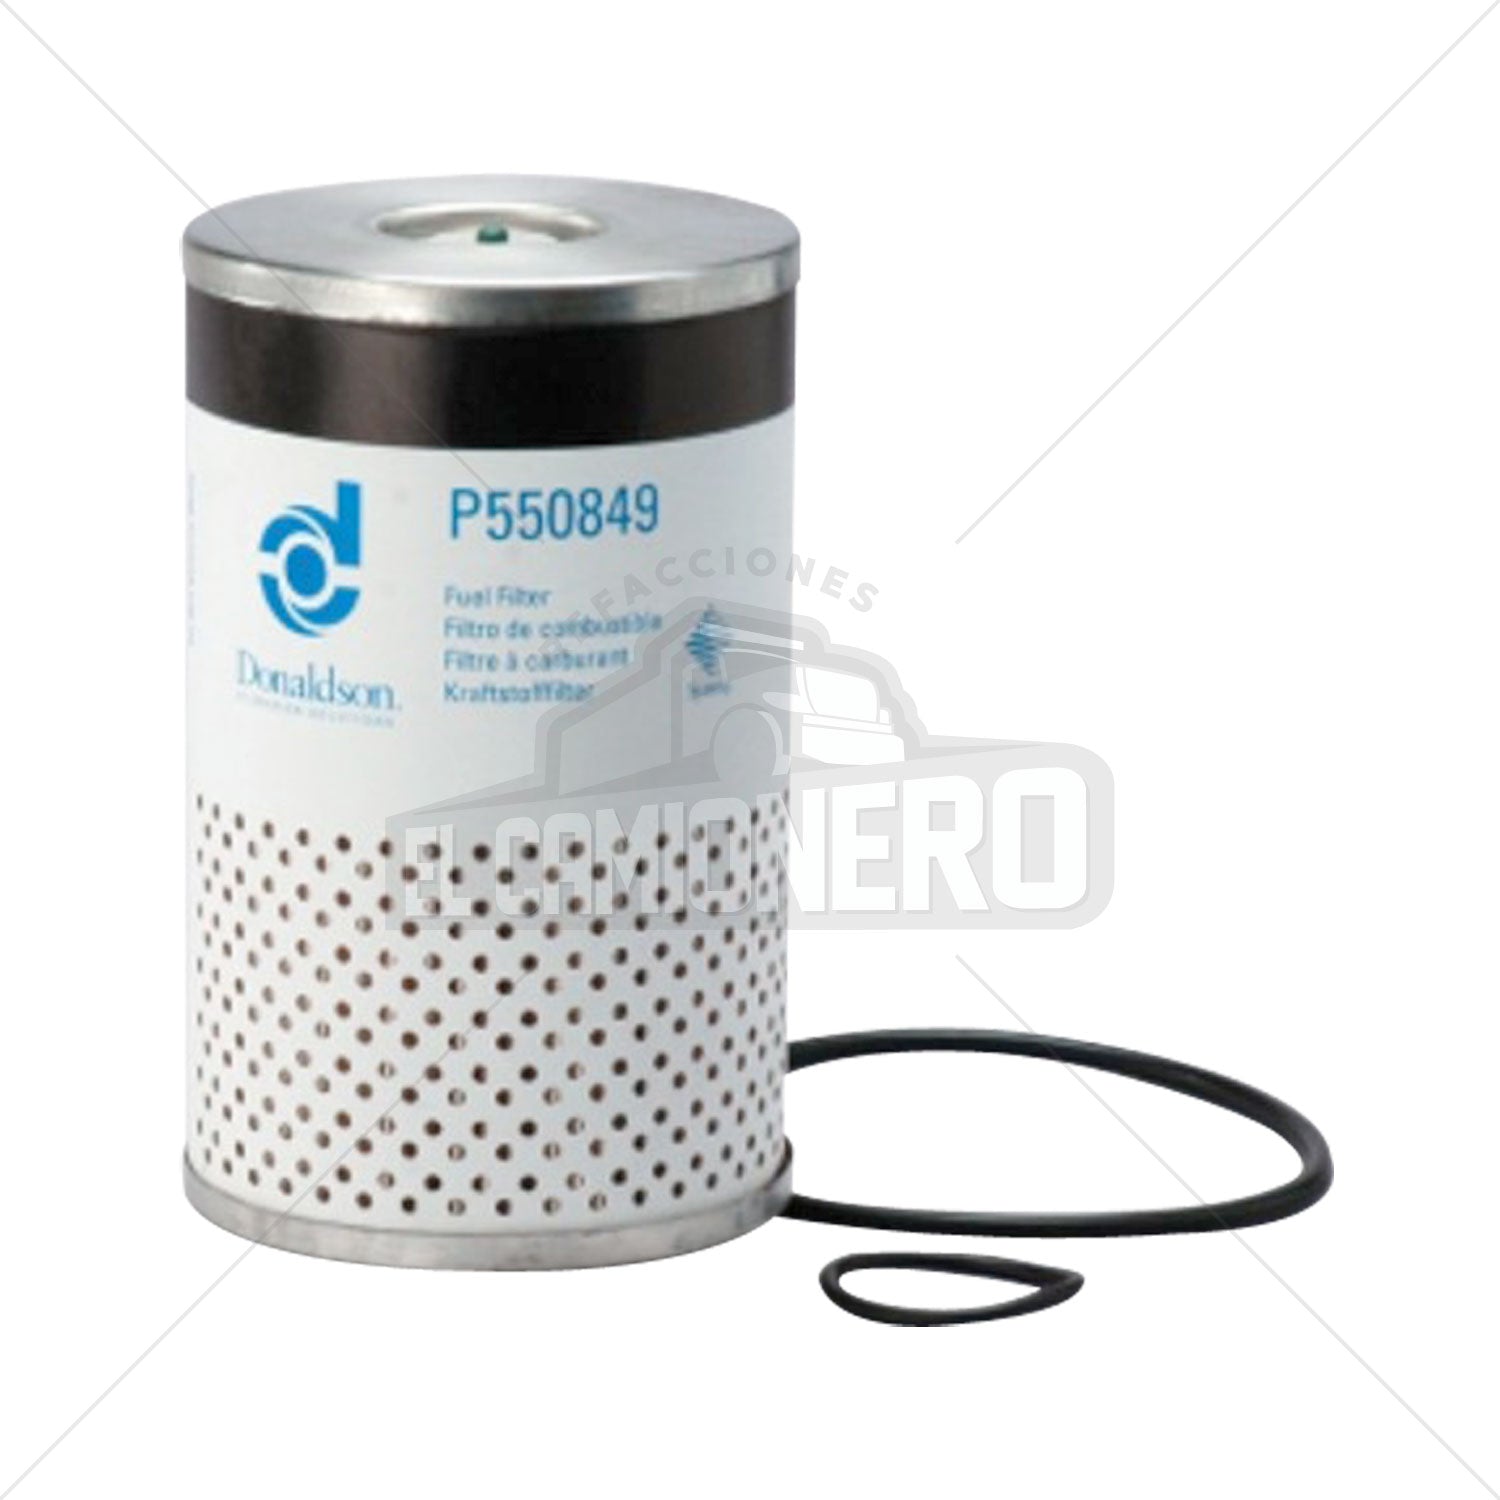 Filtro de combustible separador de agua Donaldson P550849